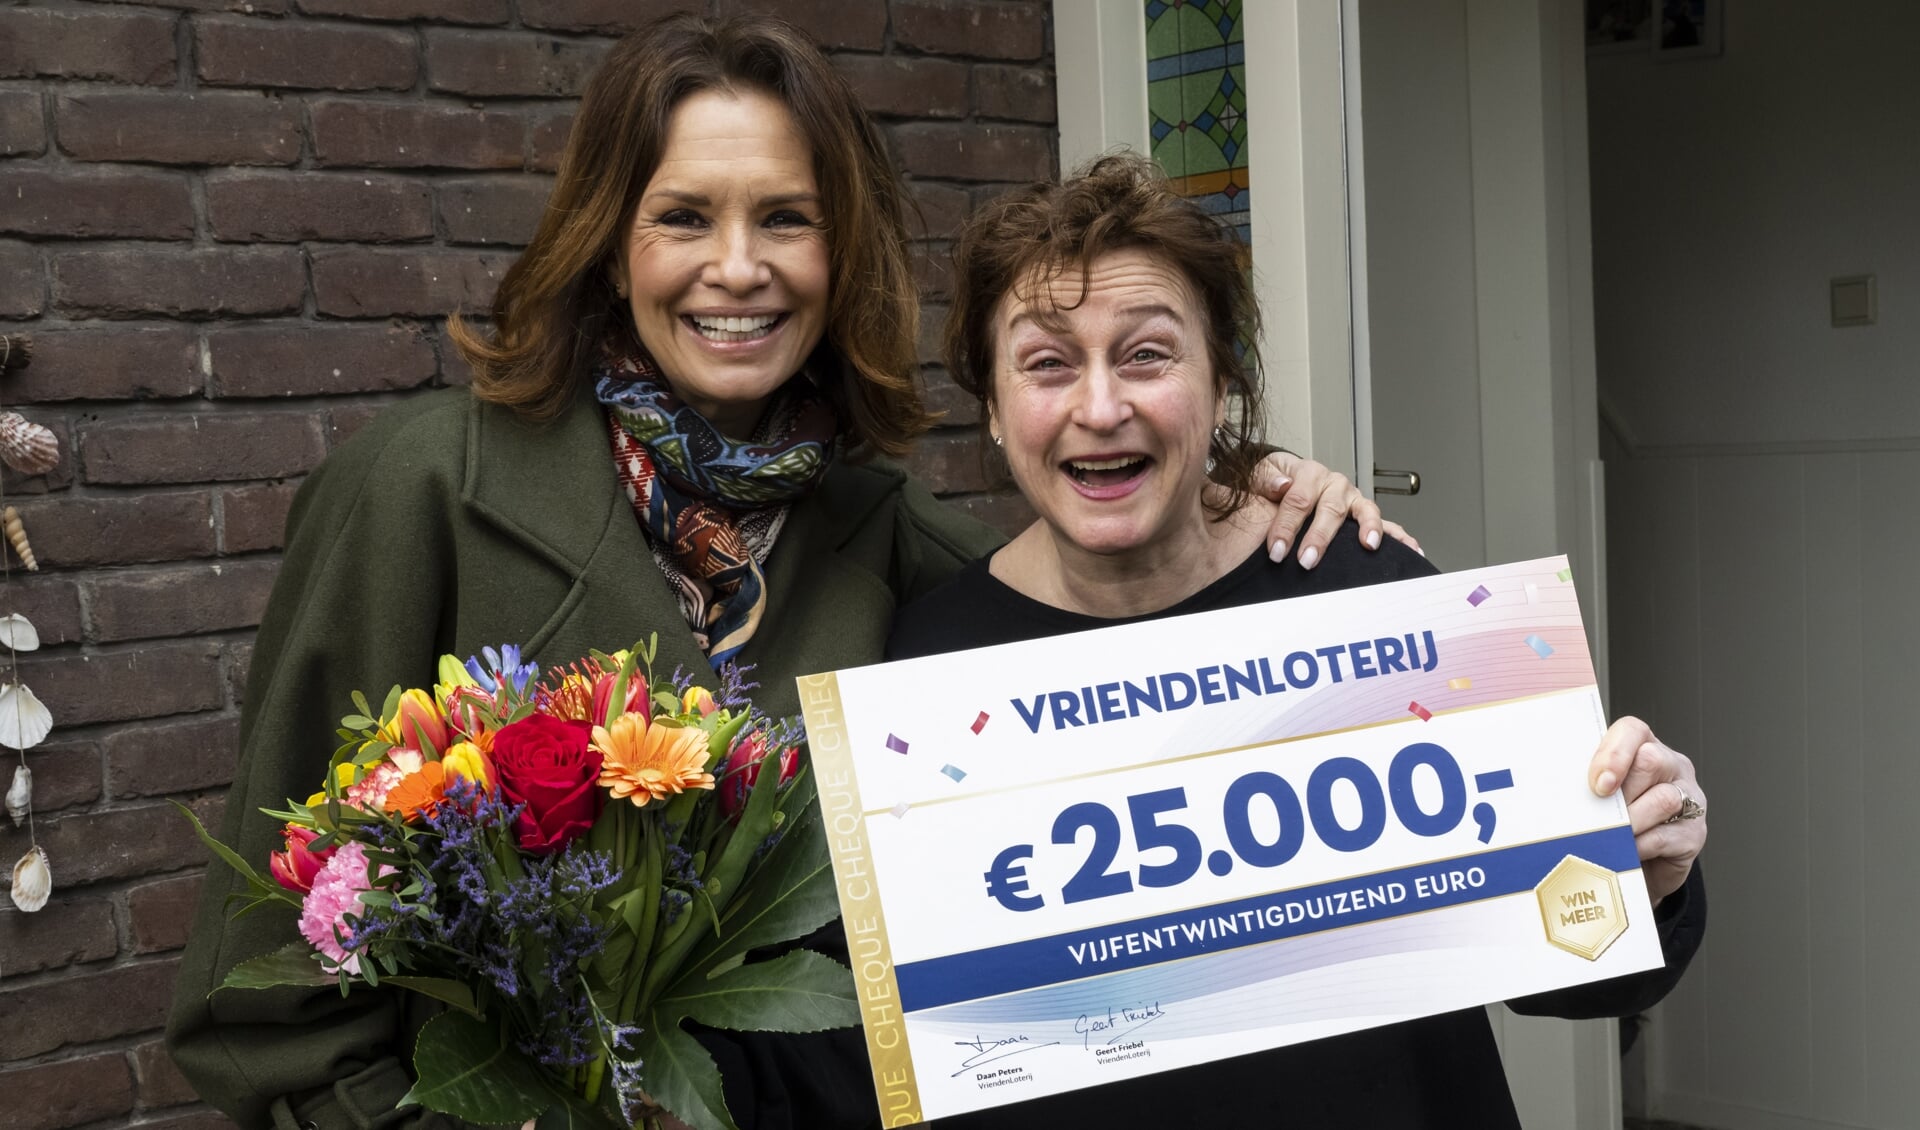 VriendenLoterij-ambassadeur Leontine Ruiters reikt cheque uit aan Patricia uit Bilthoven.jpg